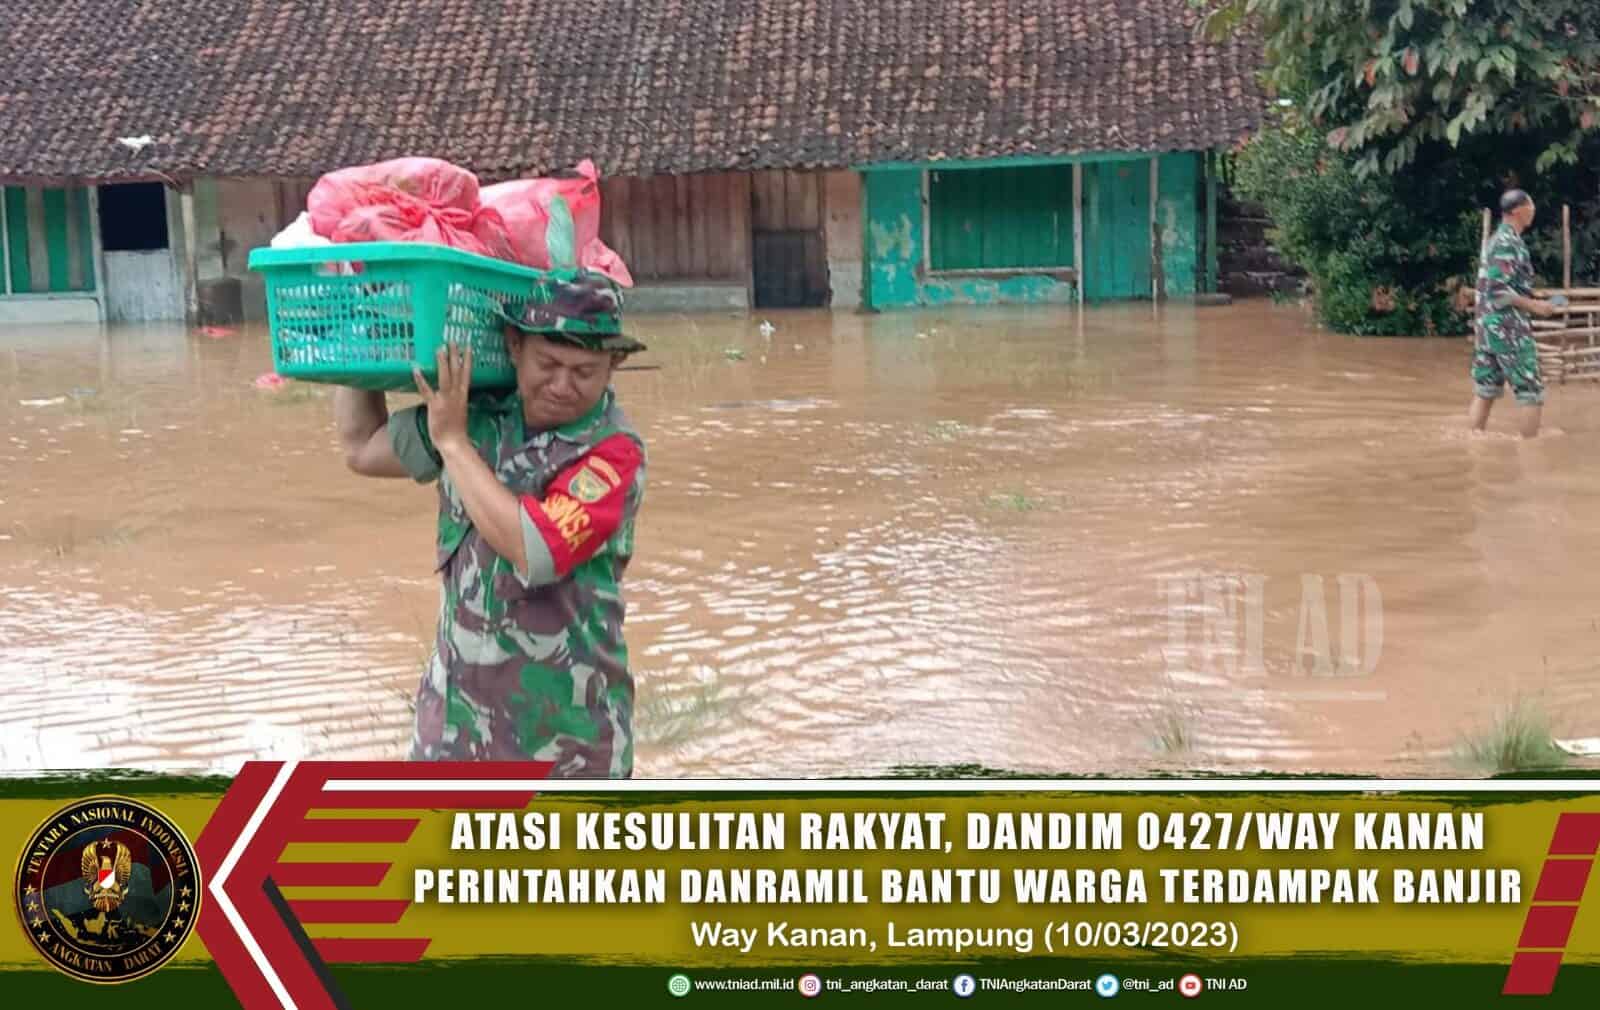 Atasi Kesulitan Rakyat, Dandim 0427/Way Kanan Perintahkan Danramil Bantu Warga Terdampak Banjir